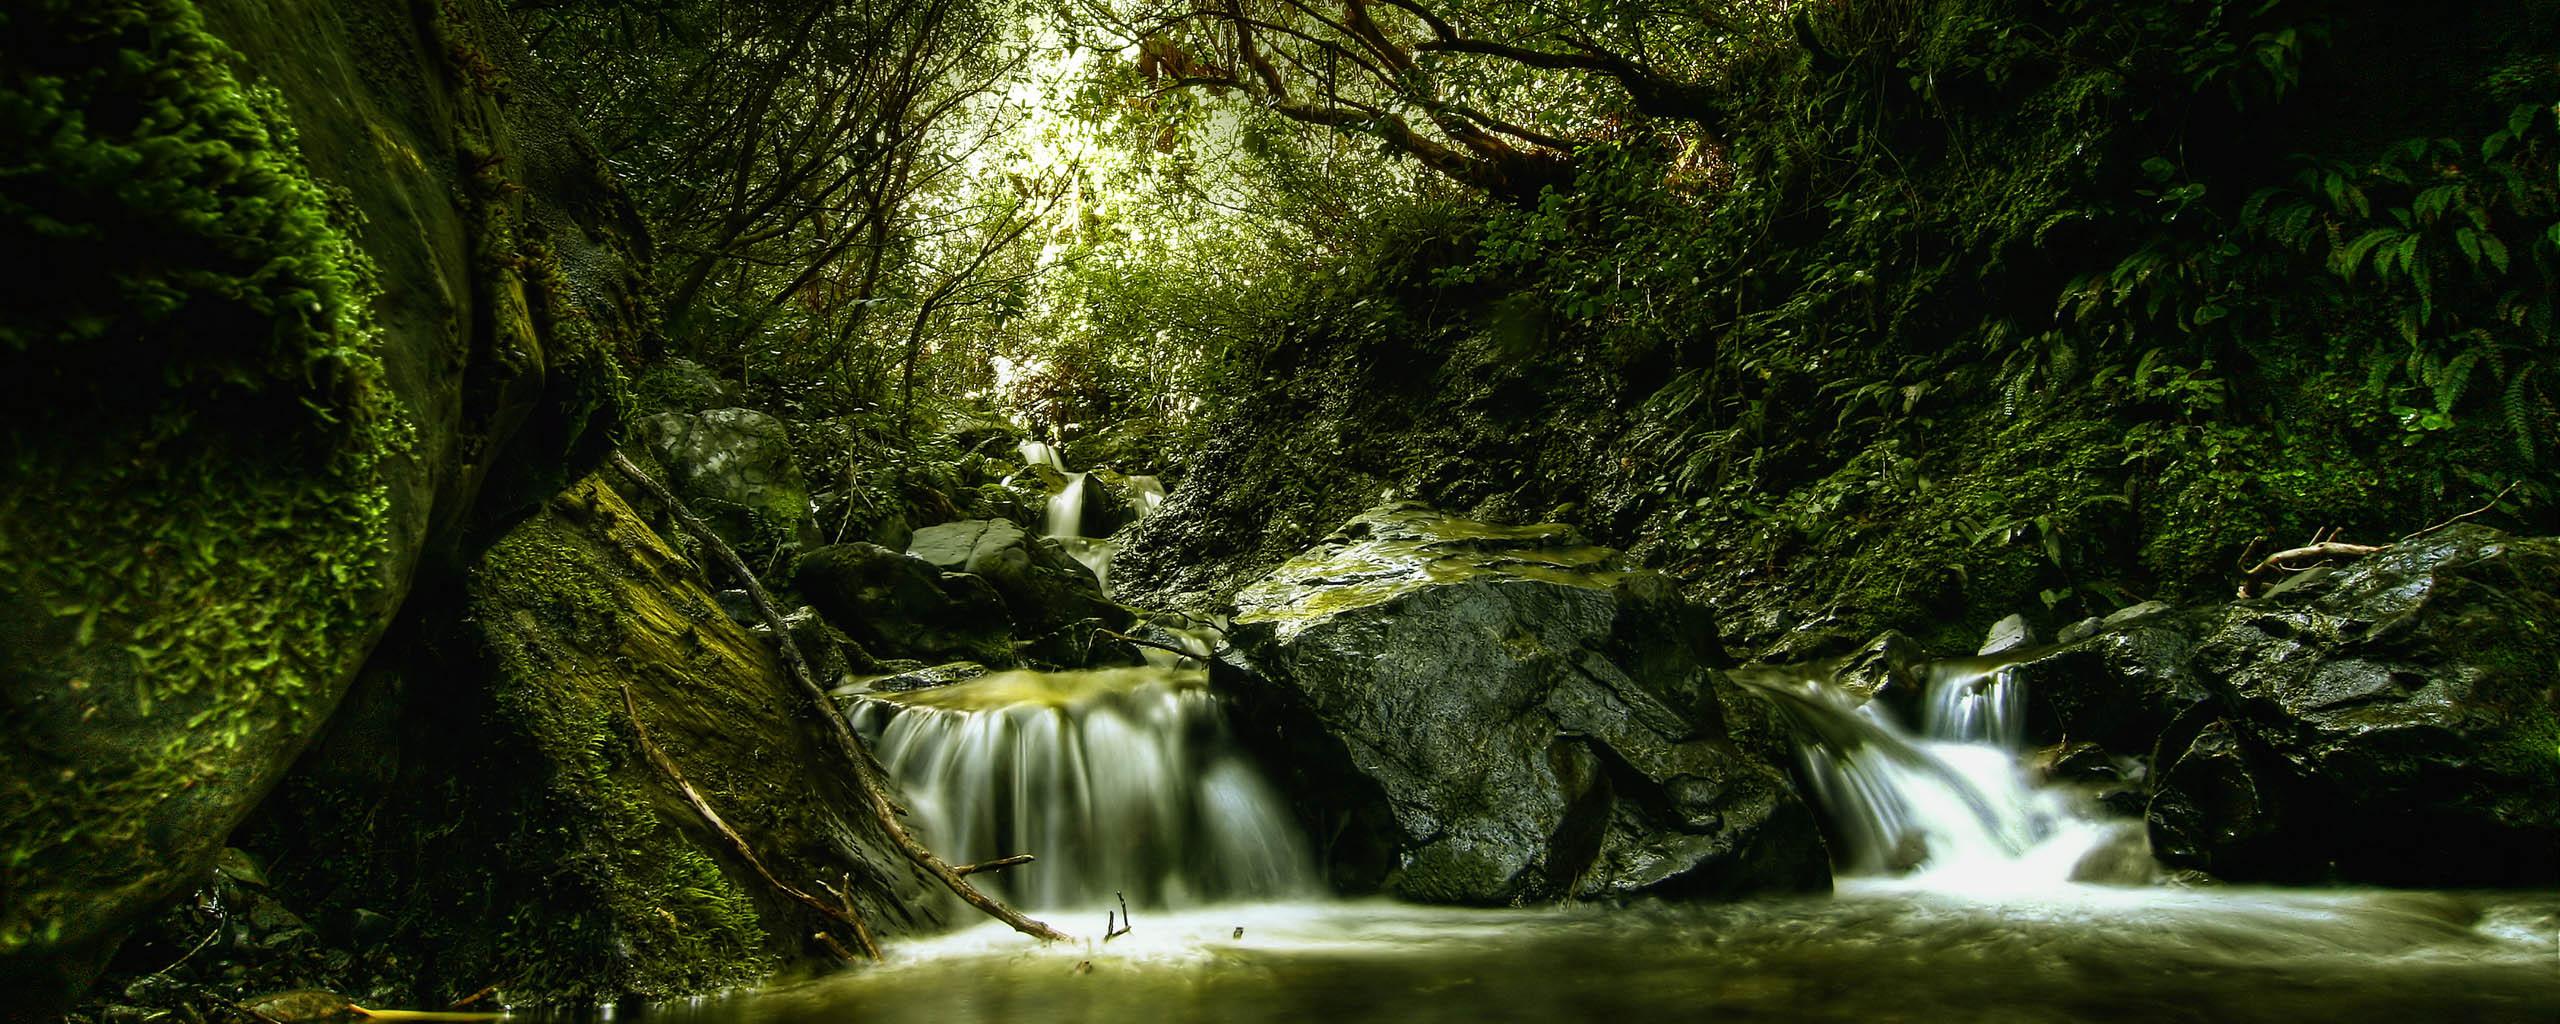 Лес, река, зелень, водопадик, особенная фотография 2560x1024